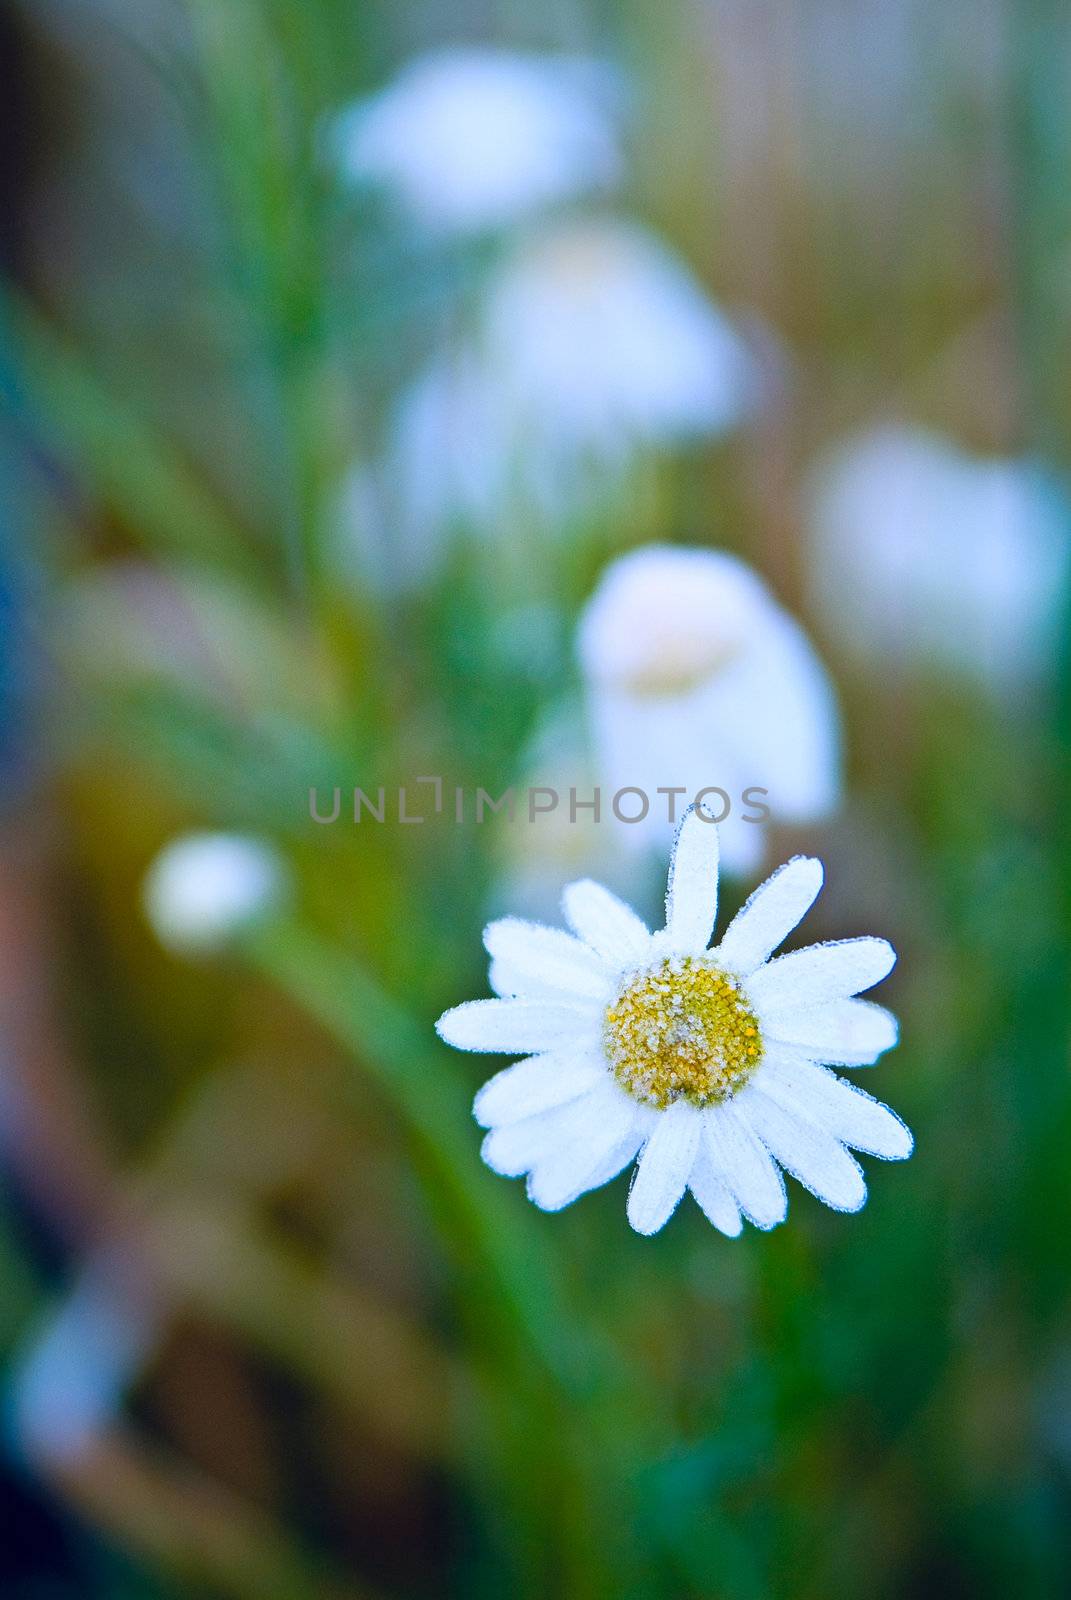 Daisy wheel flower with Hoarfrost by palomnik